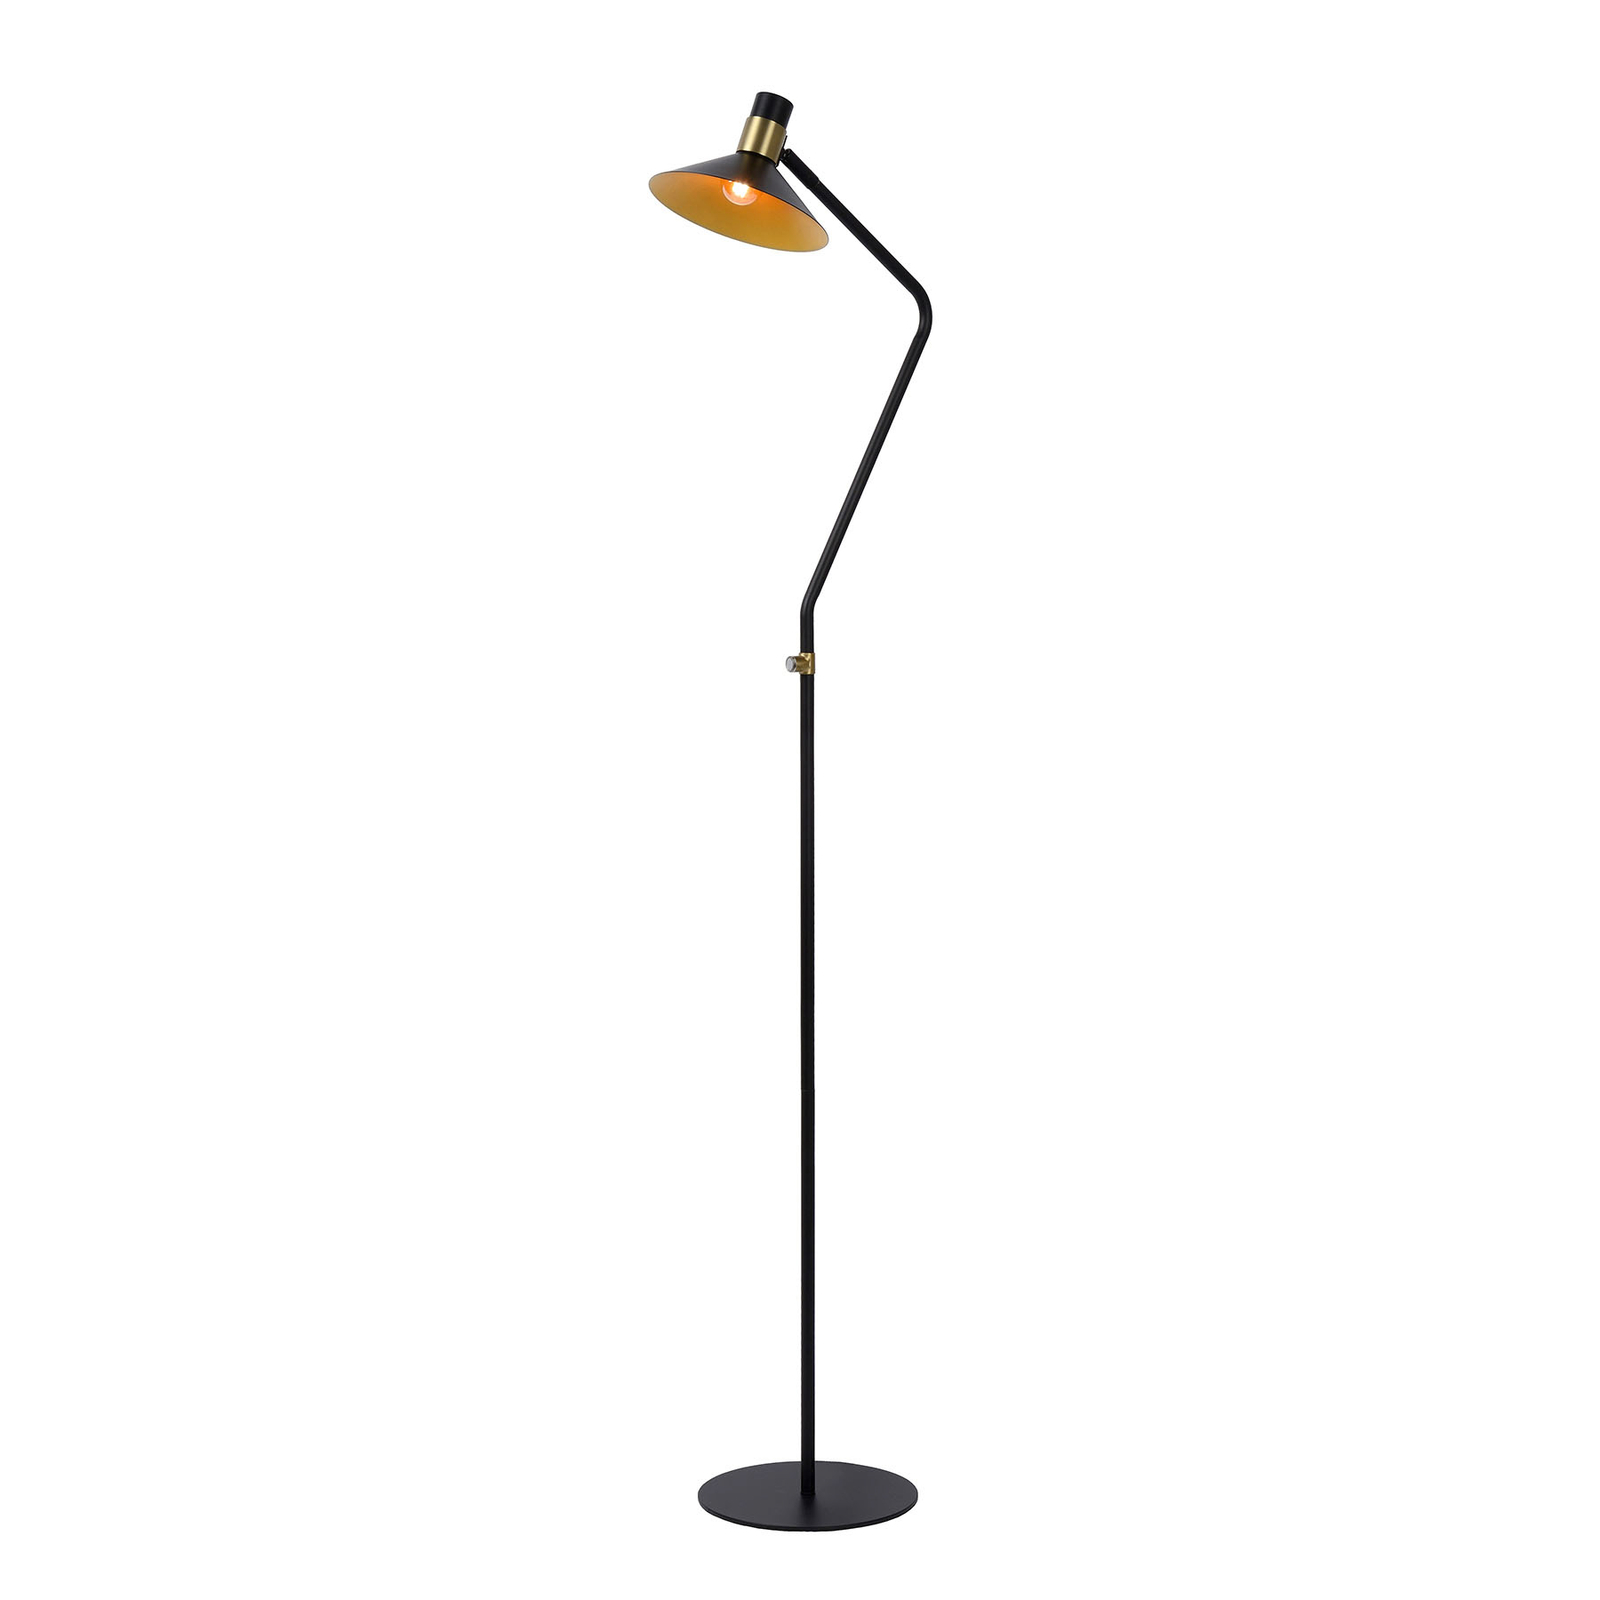 Lampă de podea Pepijn în negru și auriu, lampă simplă